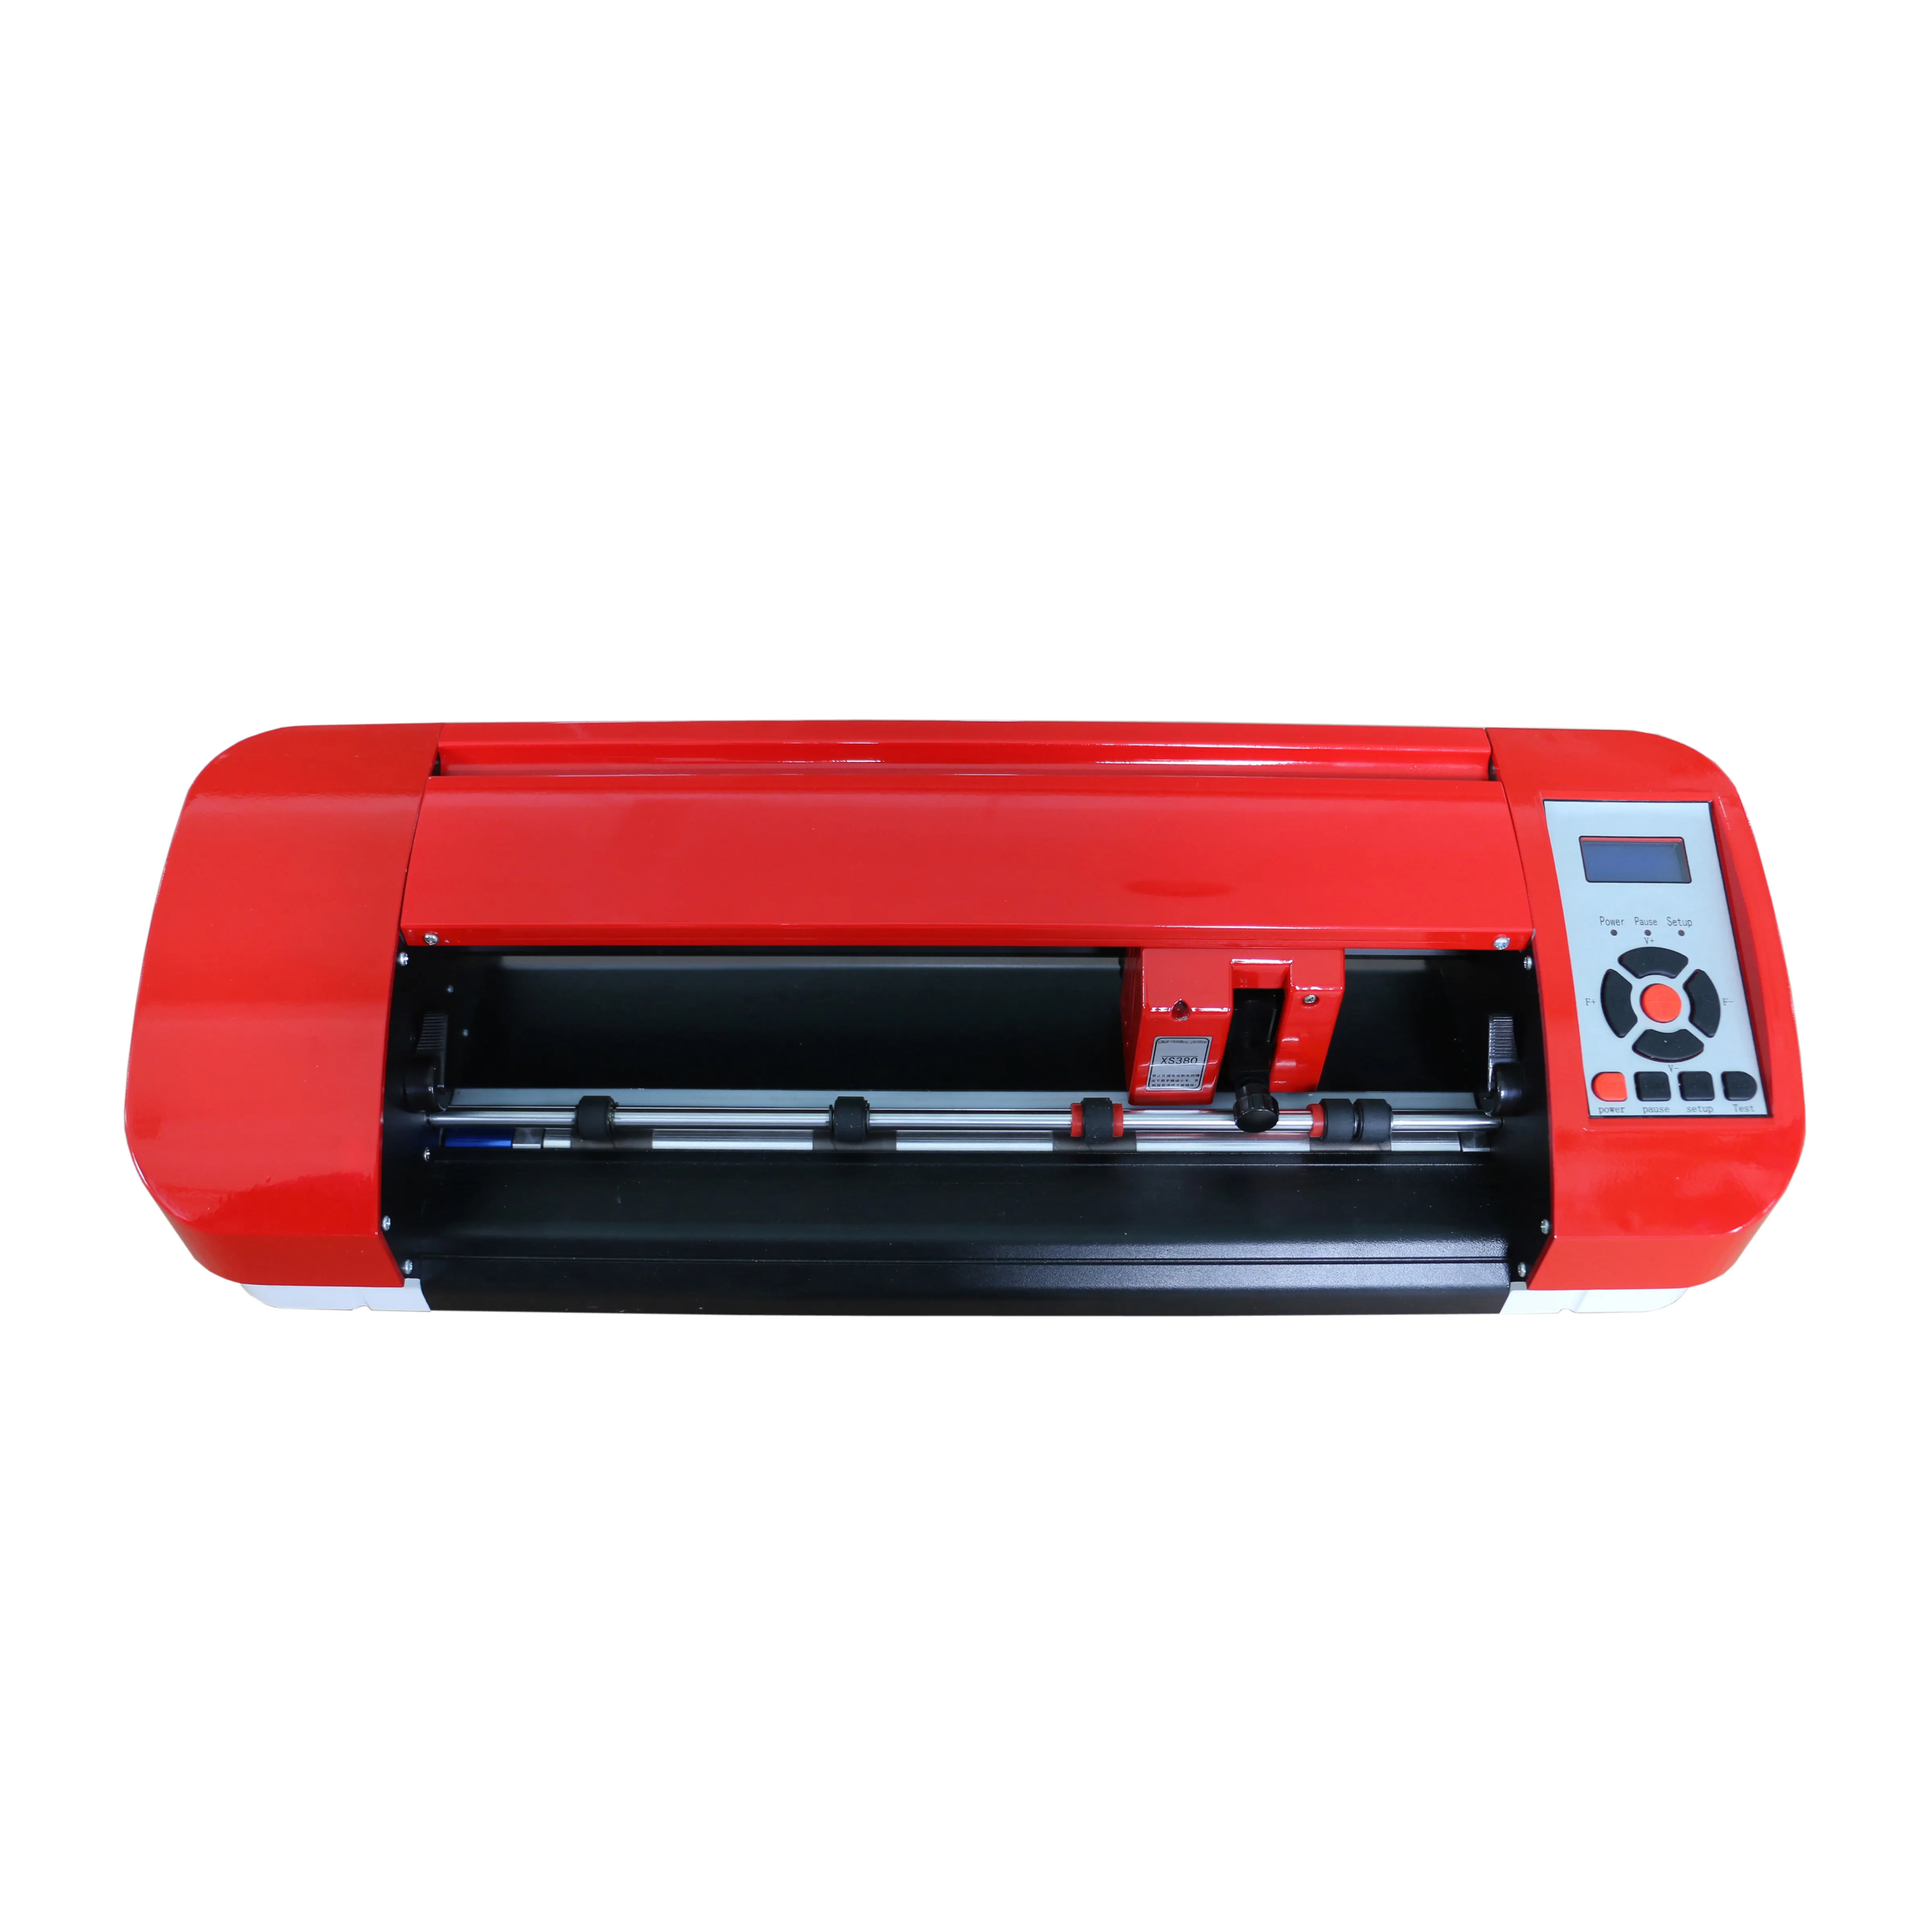 Adesivo cortador de vinil barato, máquina plotter a4 a3